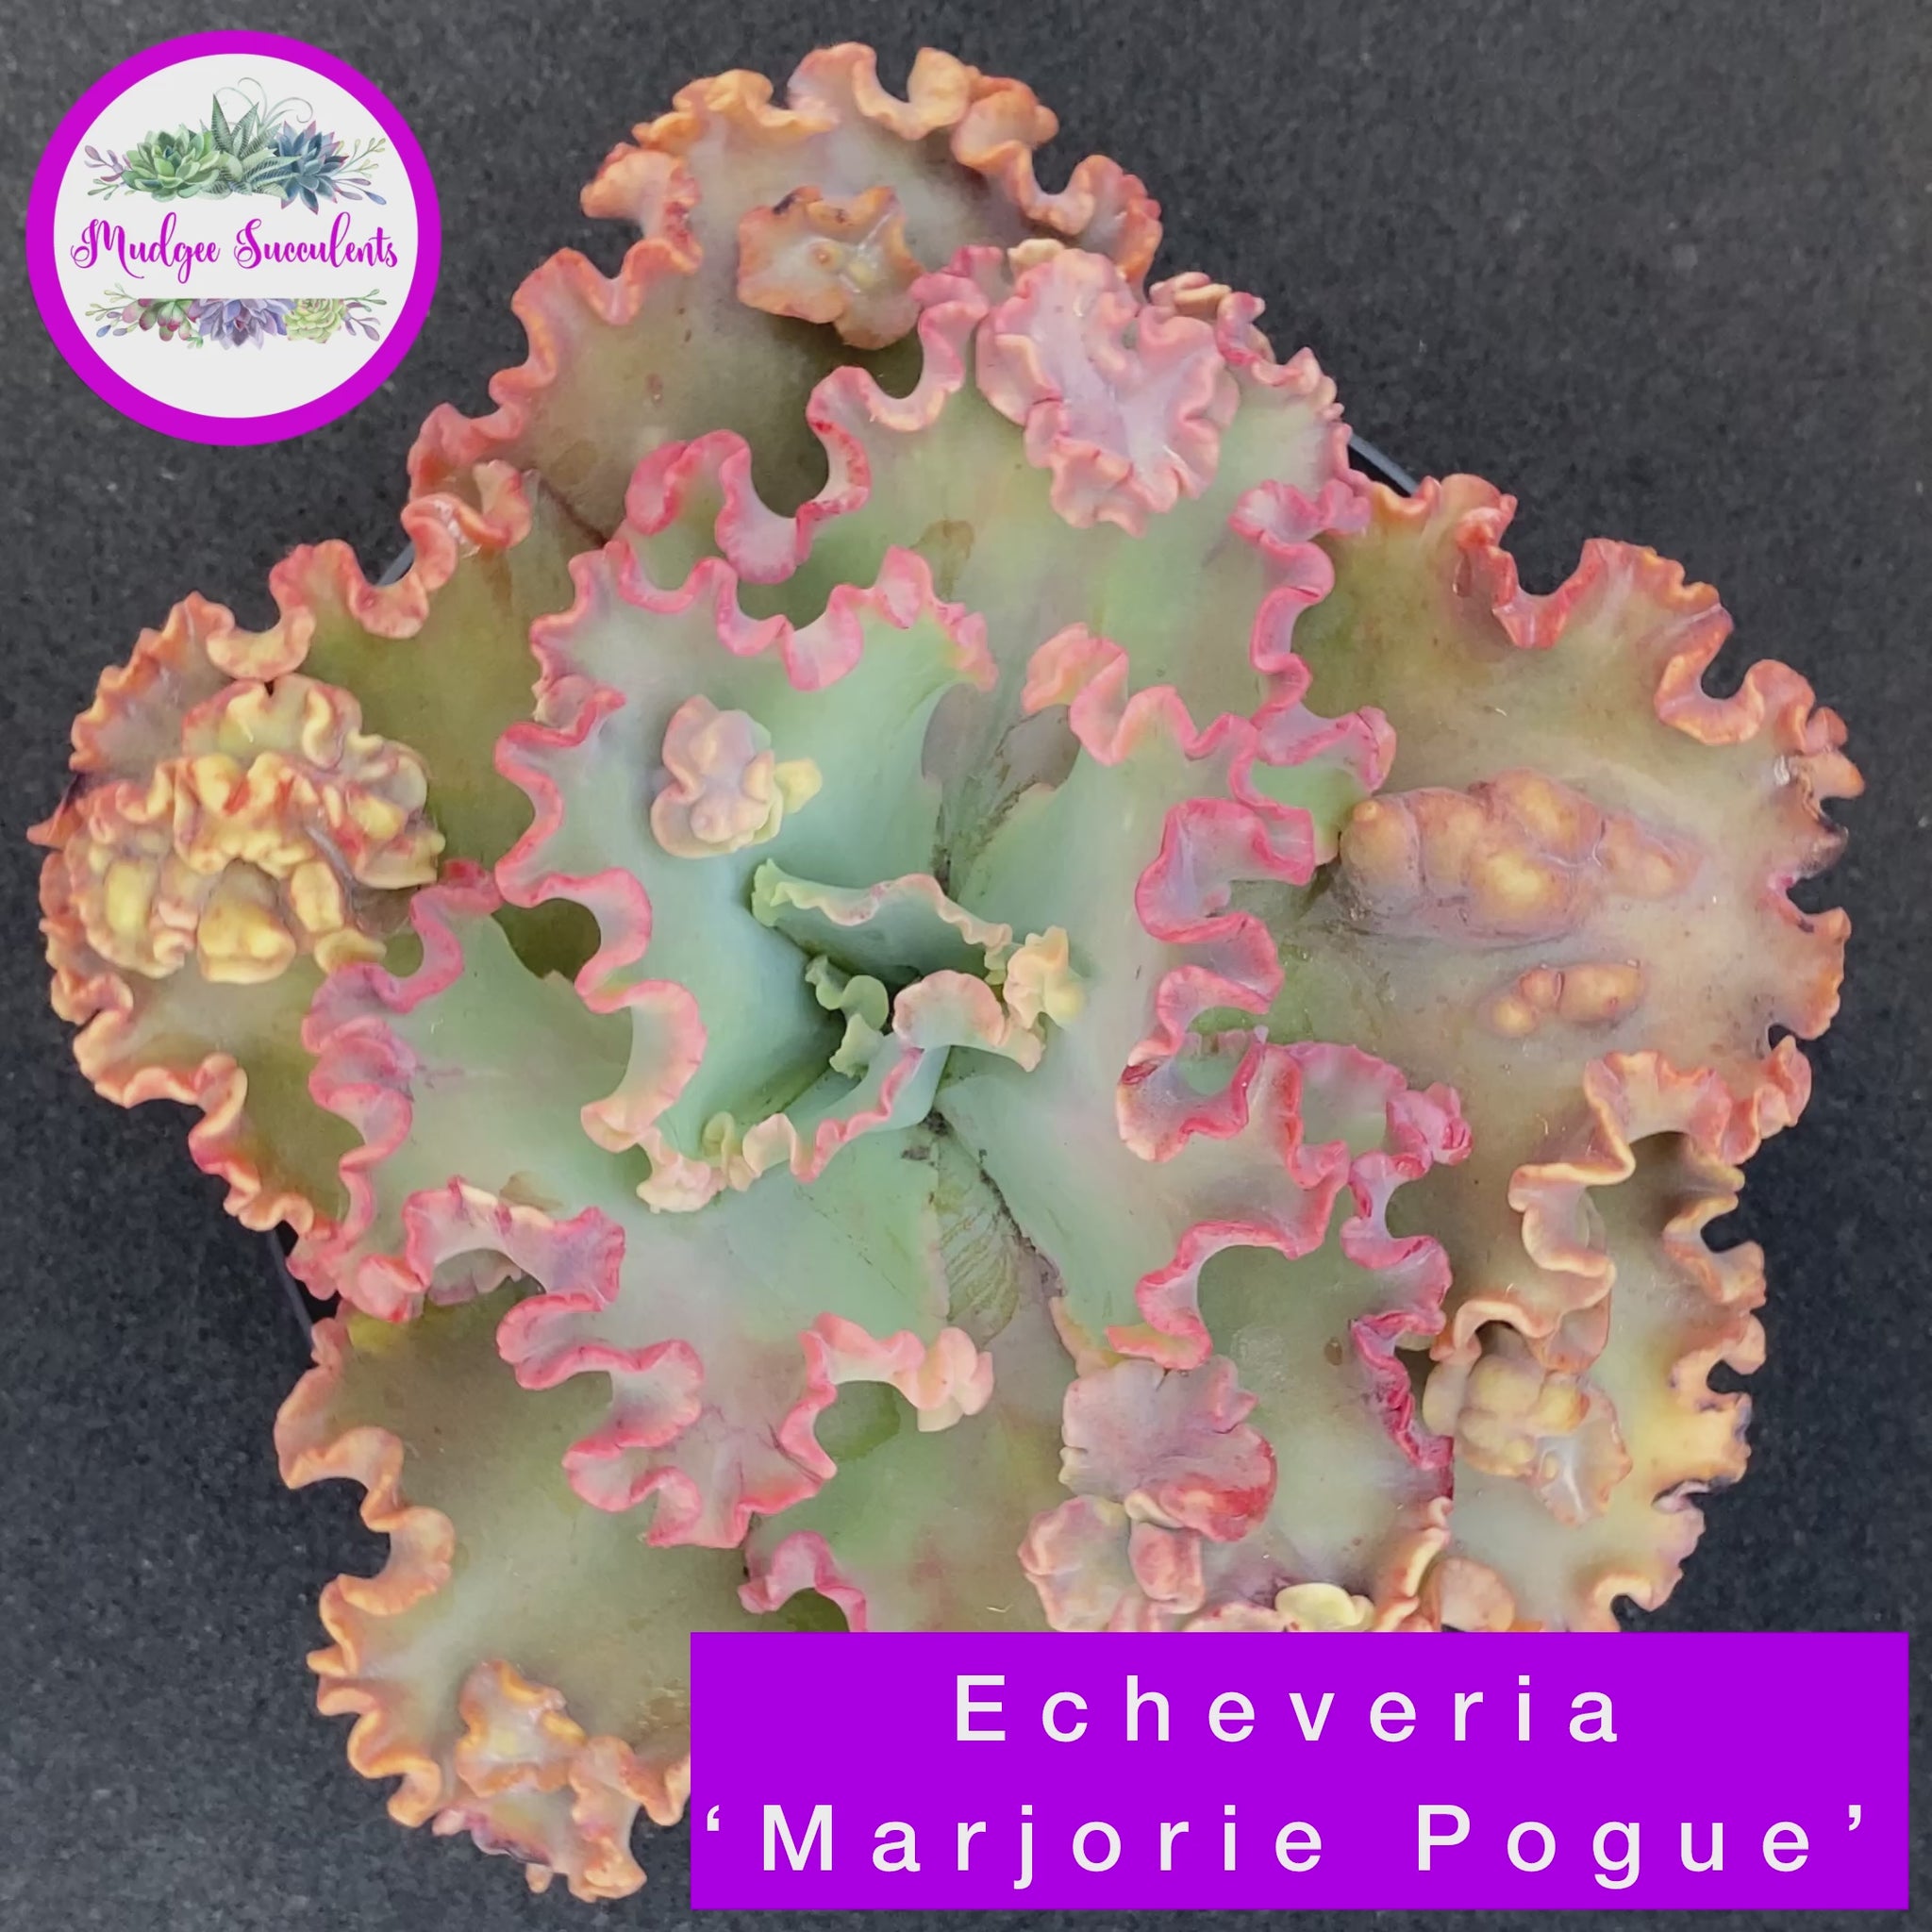 Echeveria 'Marjorie Pogue' Video - Mudgee Succulents